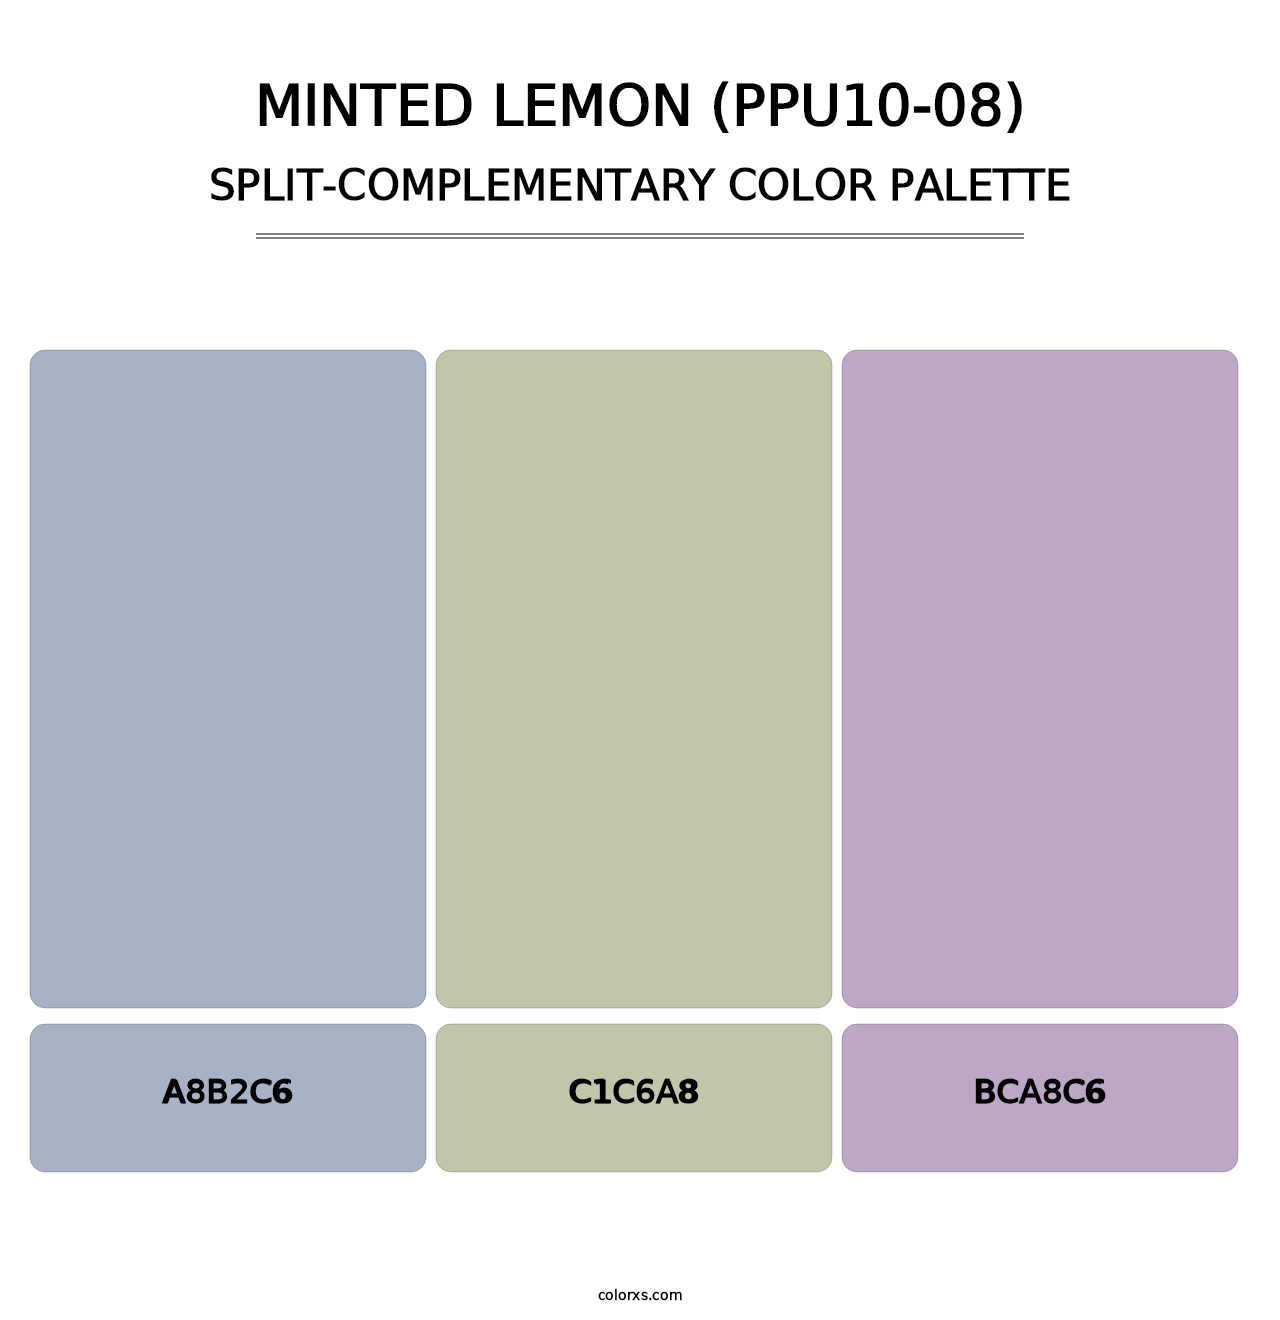 Minted Lemon (PPU10-08) - Split-Complementary Color Palette